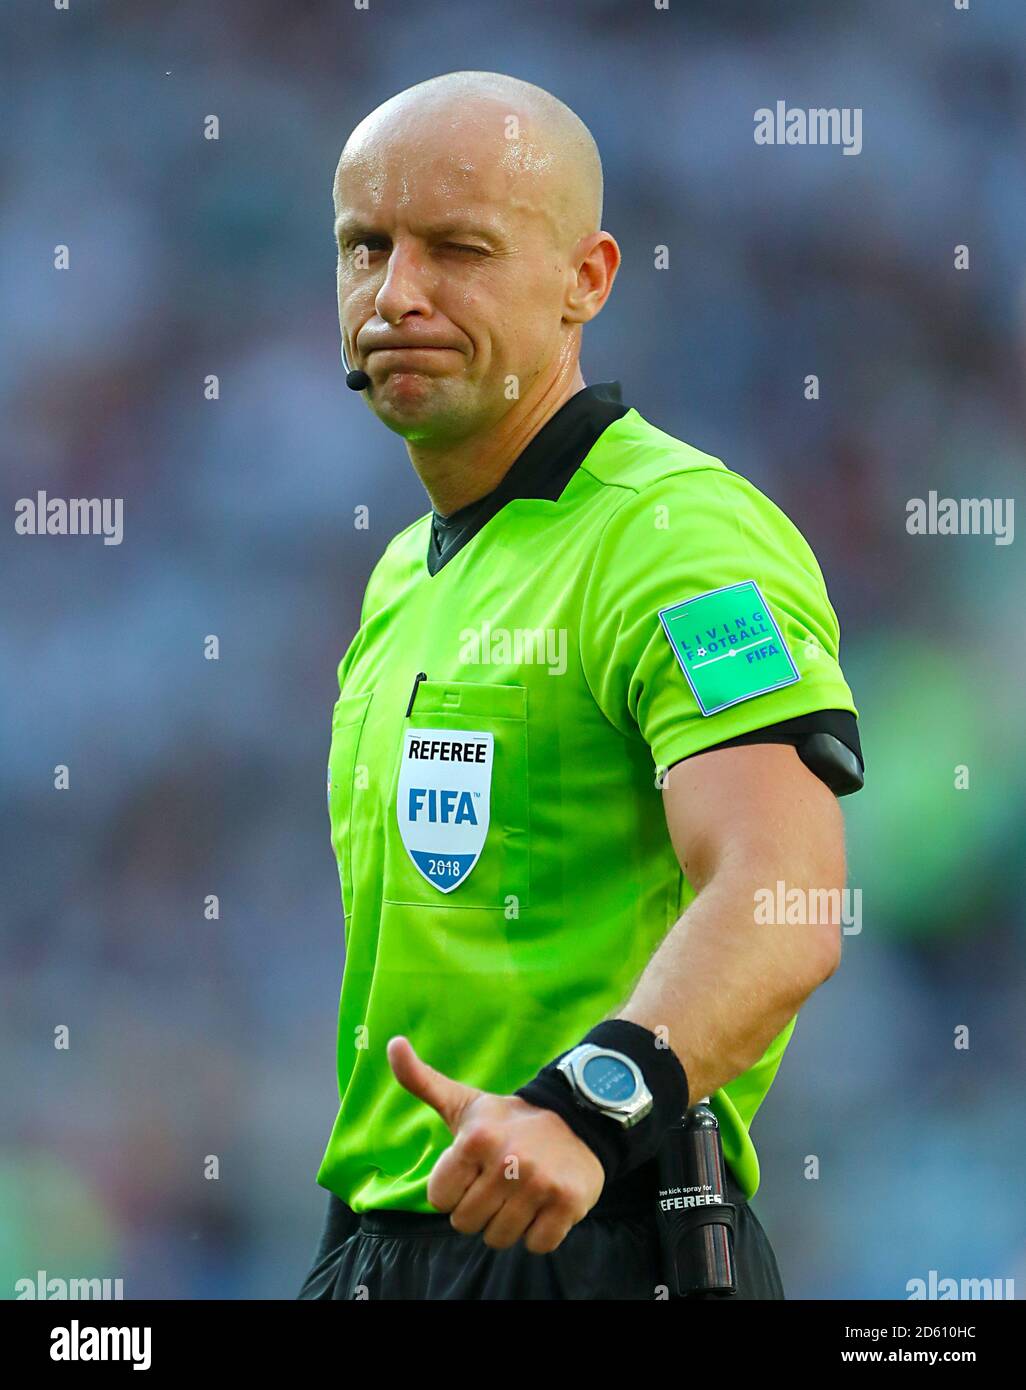 Referee Szymon Marciniak Stock Photo